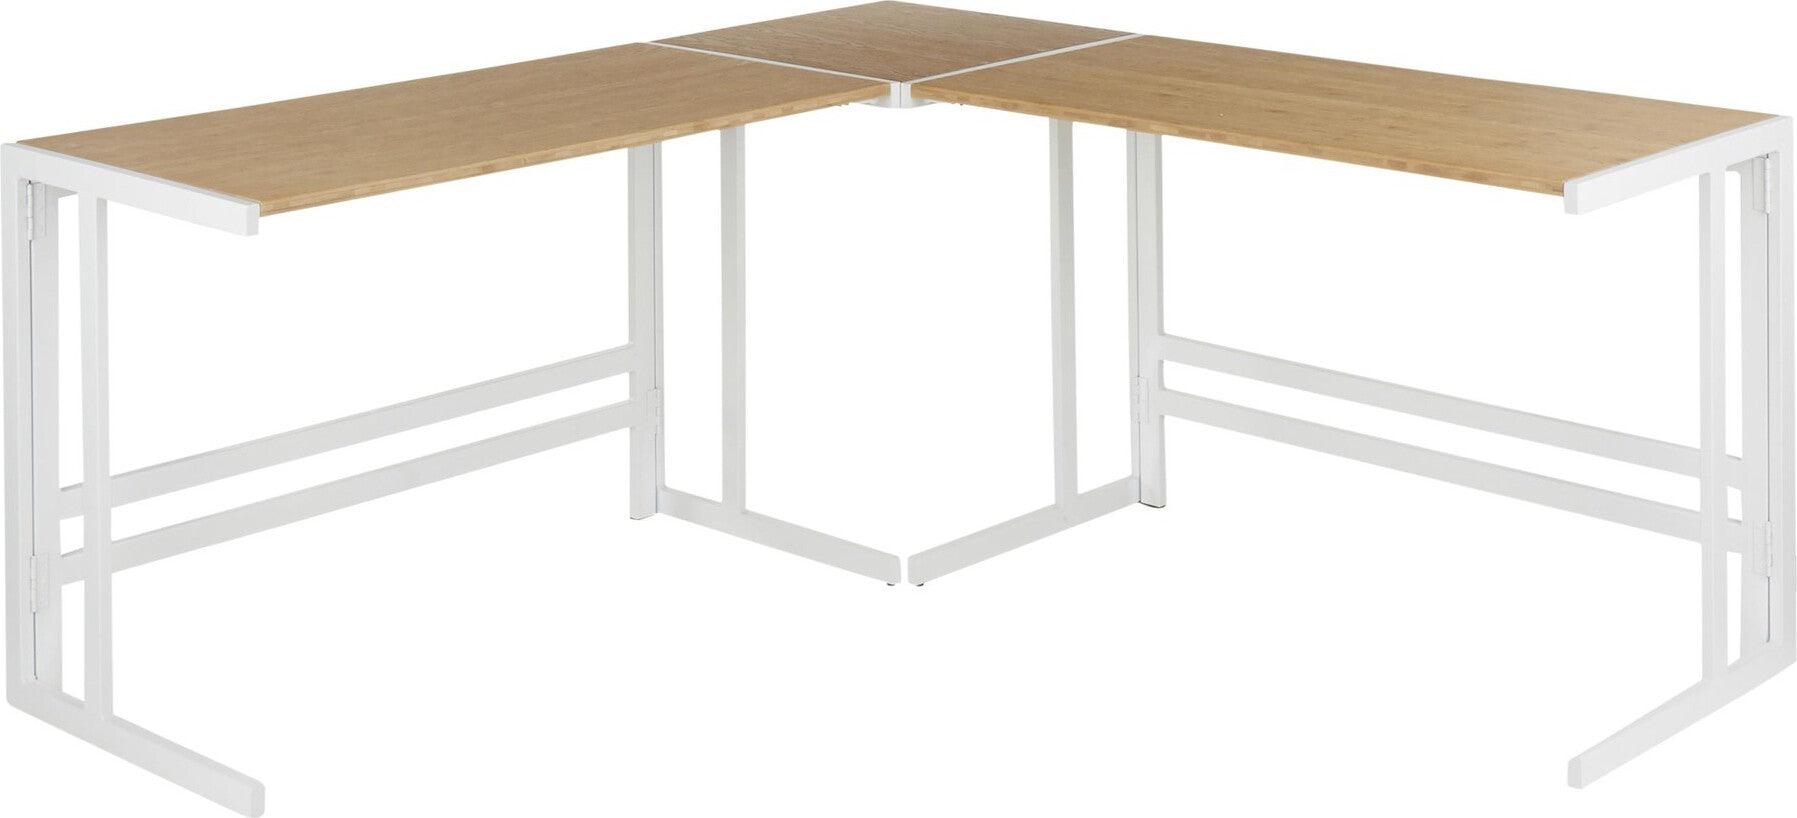 Lumisource Desks - Roman Office Desk - L Shaped Set White & Natural